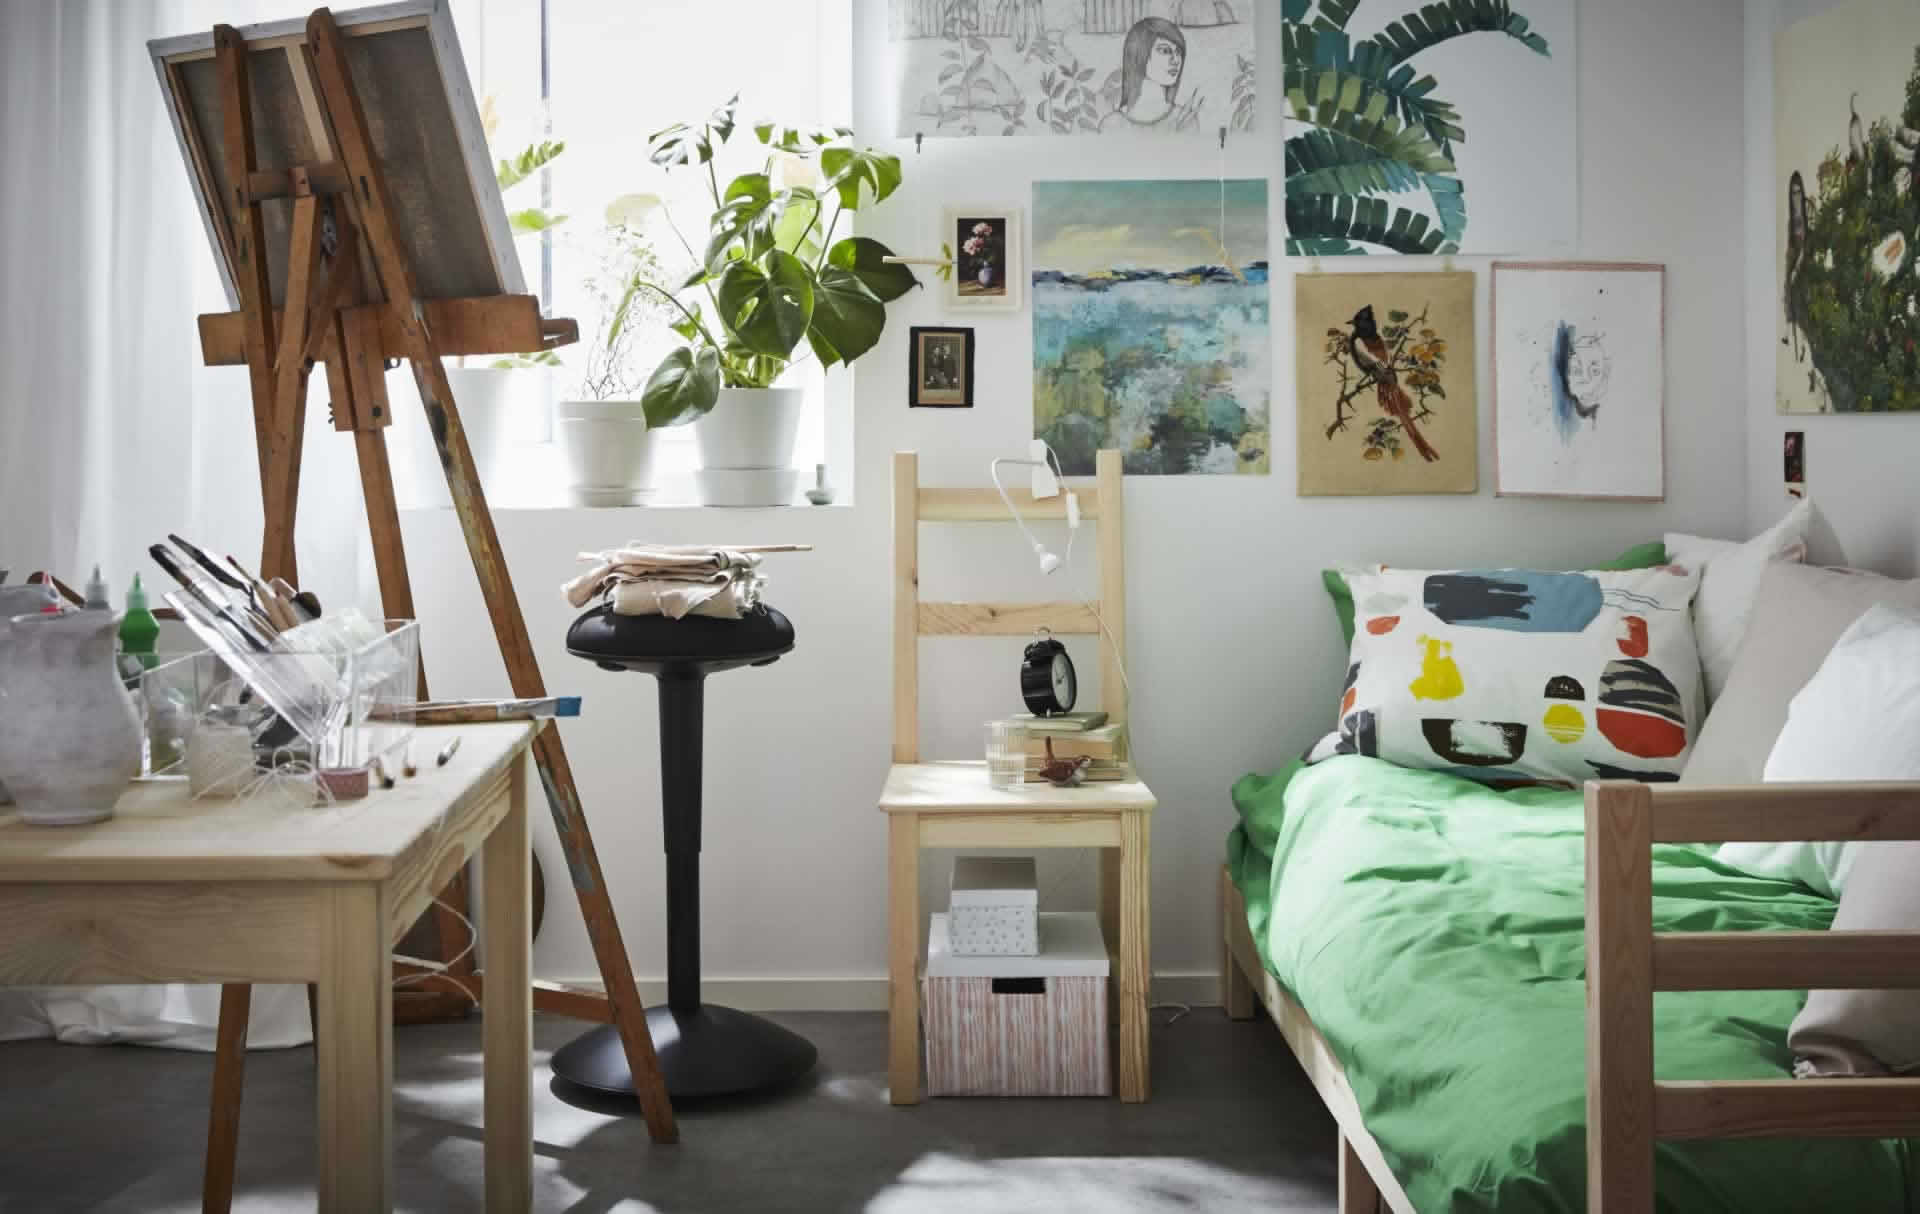 IKEA Ideas - Fresh and artsy dorm room ideas